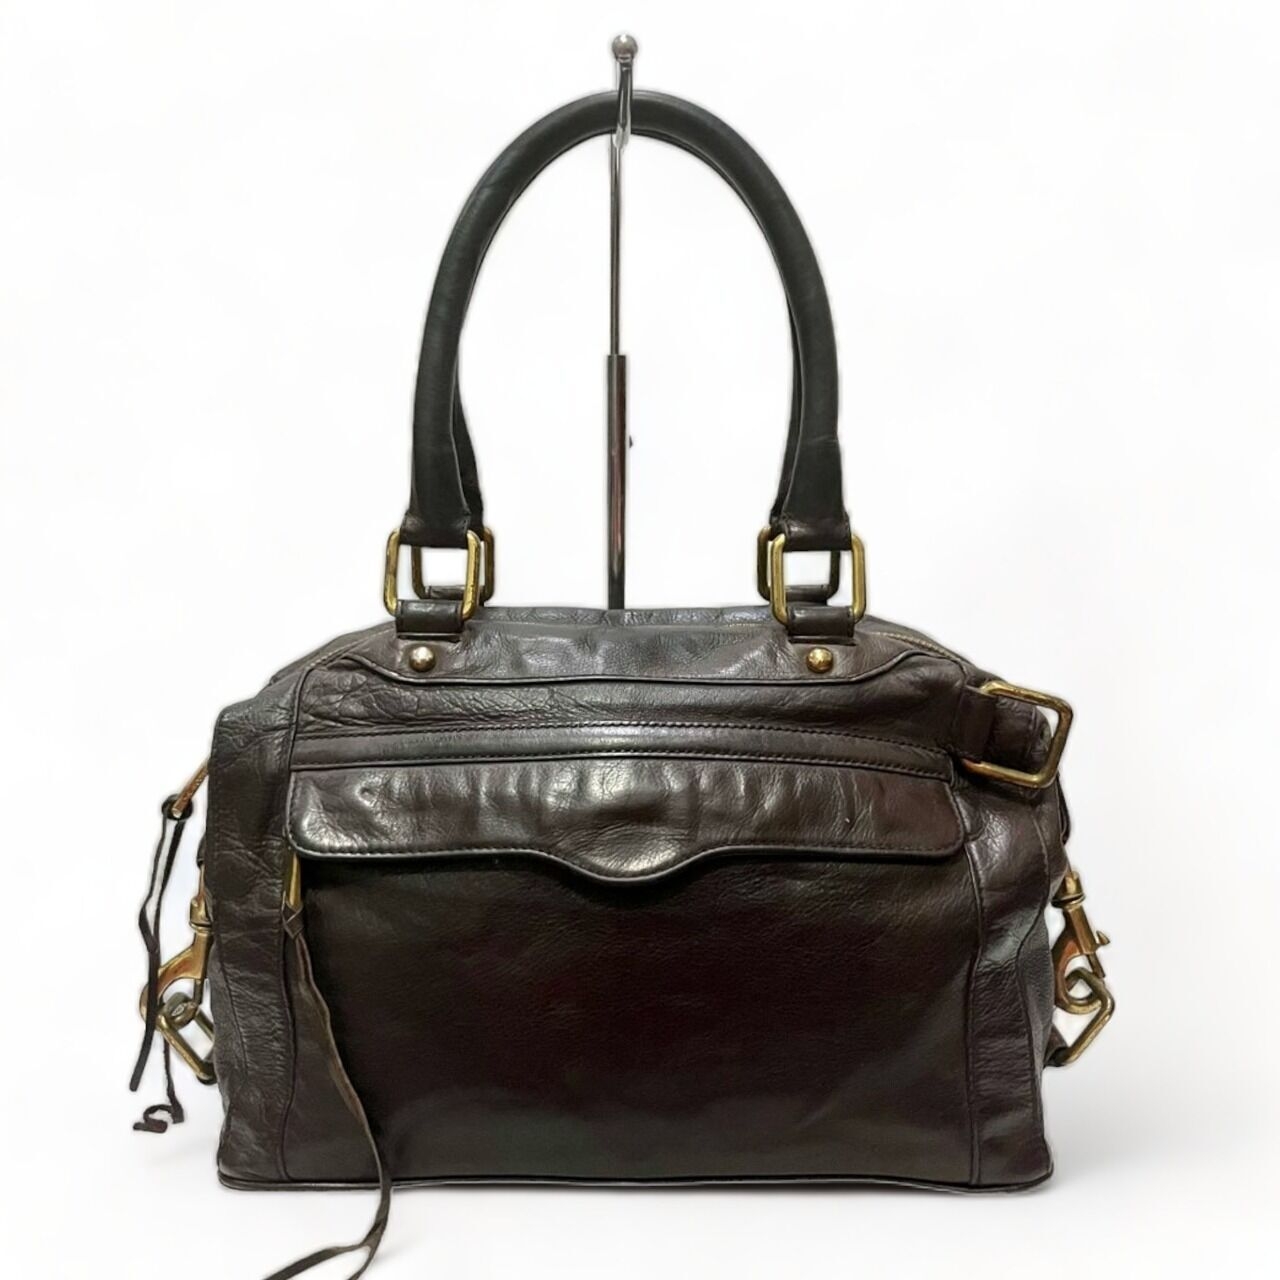 Rebecca Minkoff Morning After Genuine Leather Handbag